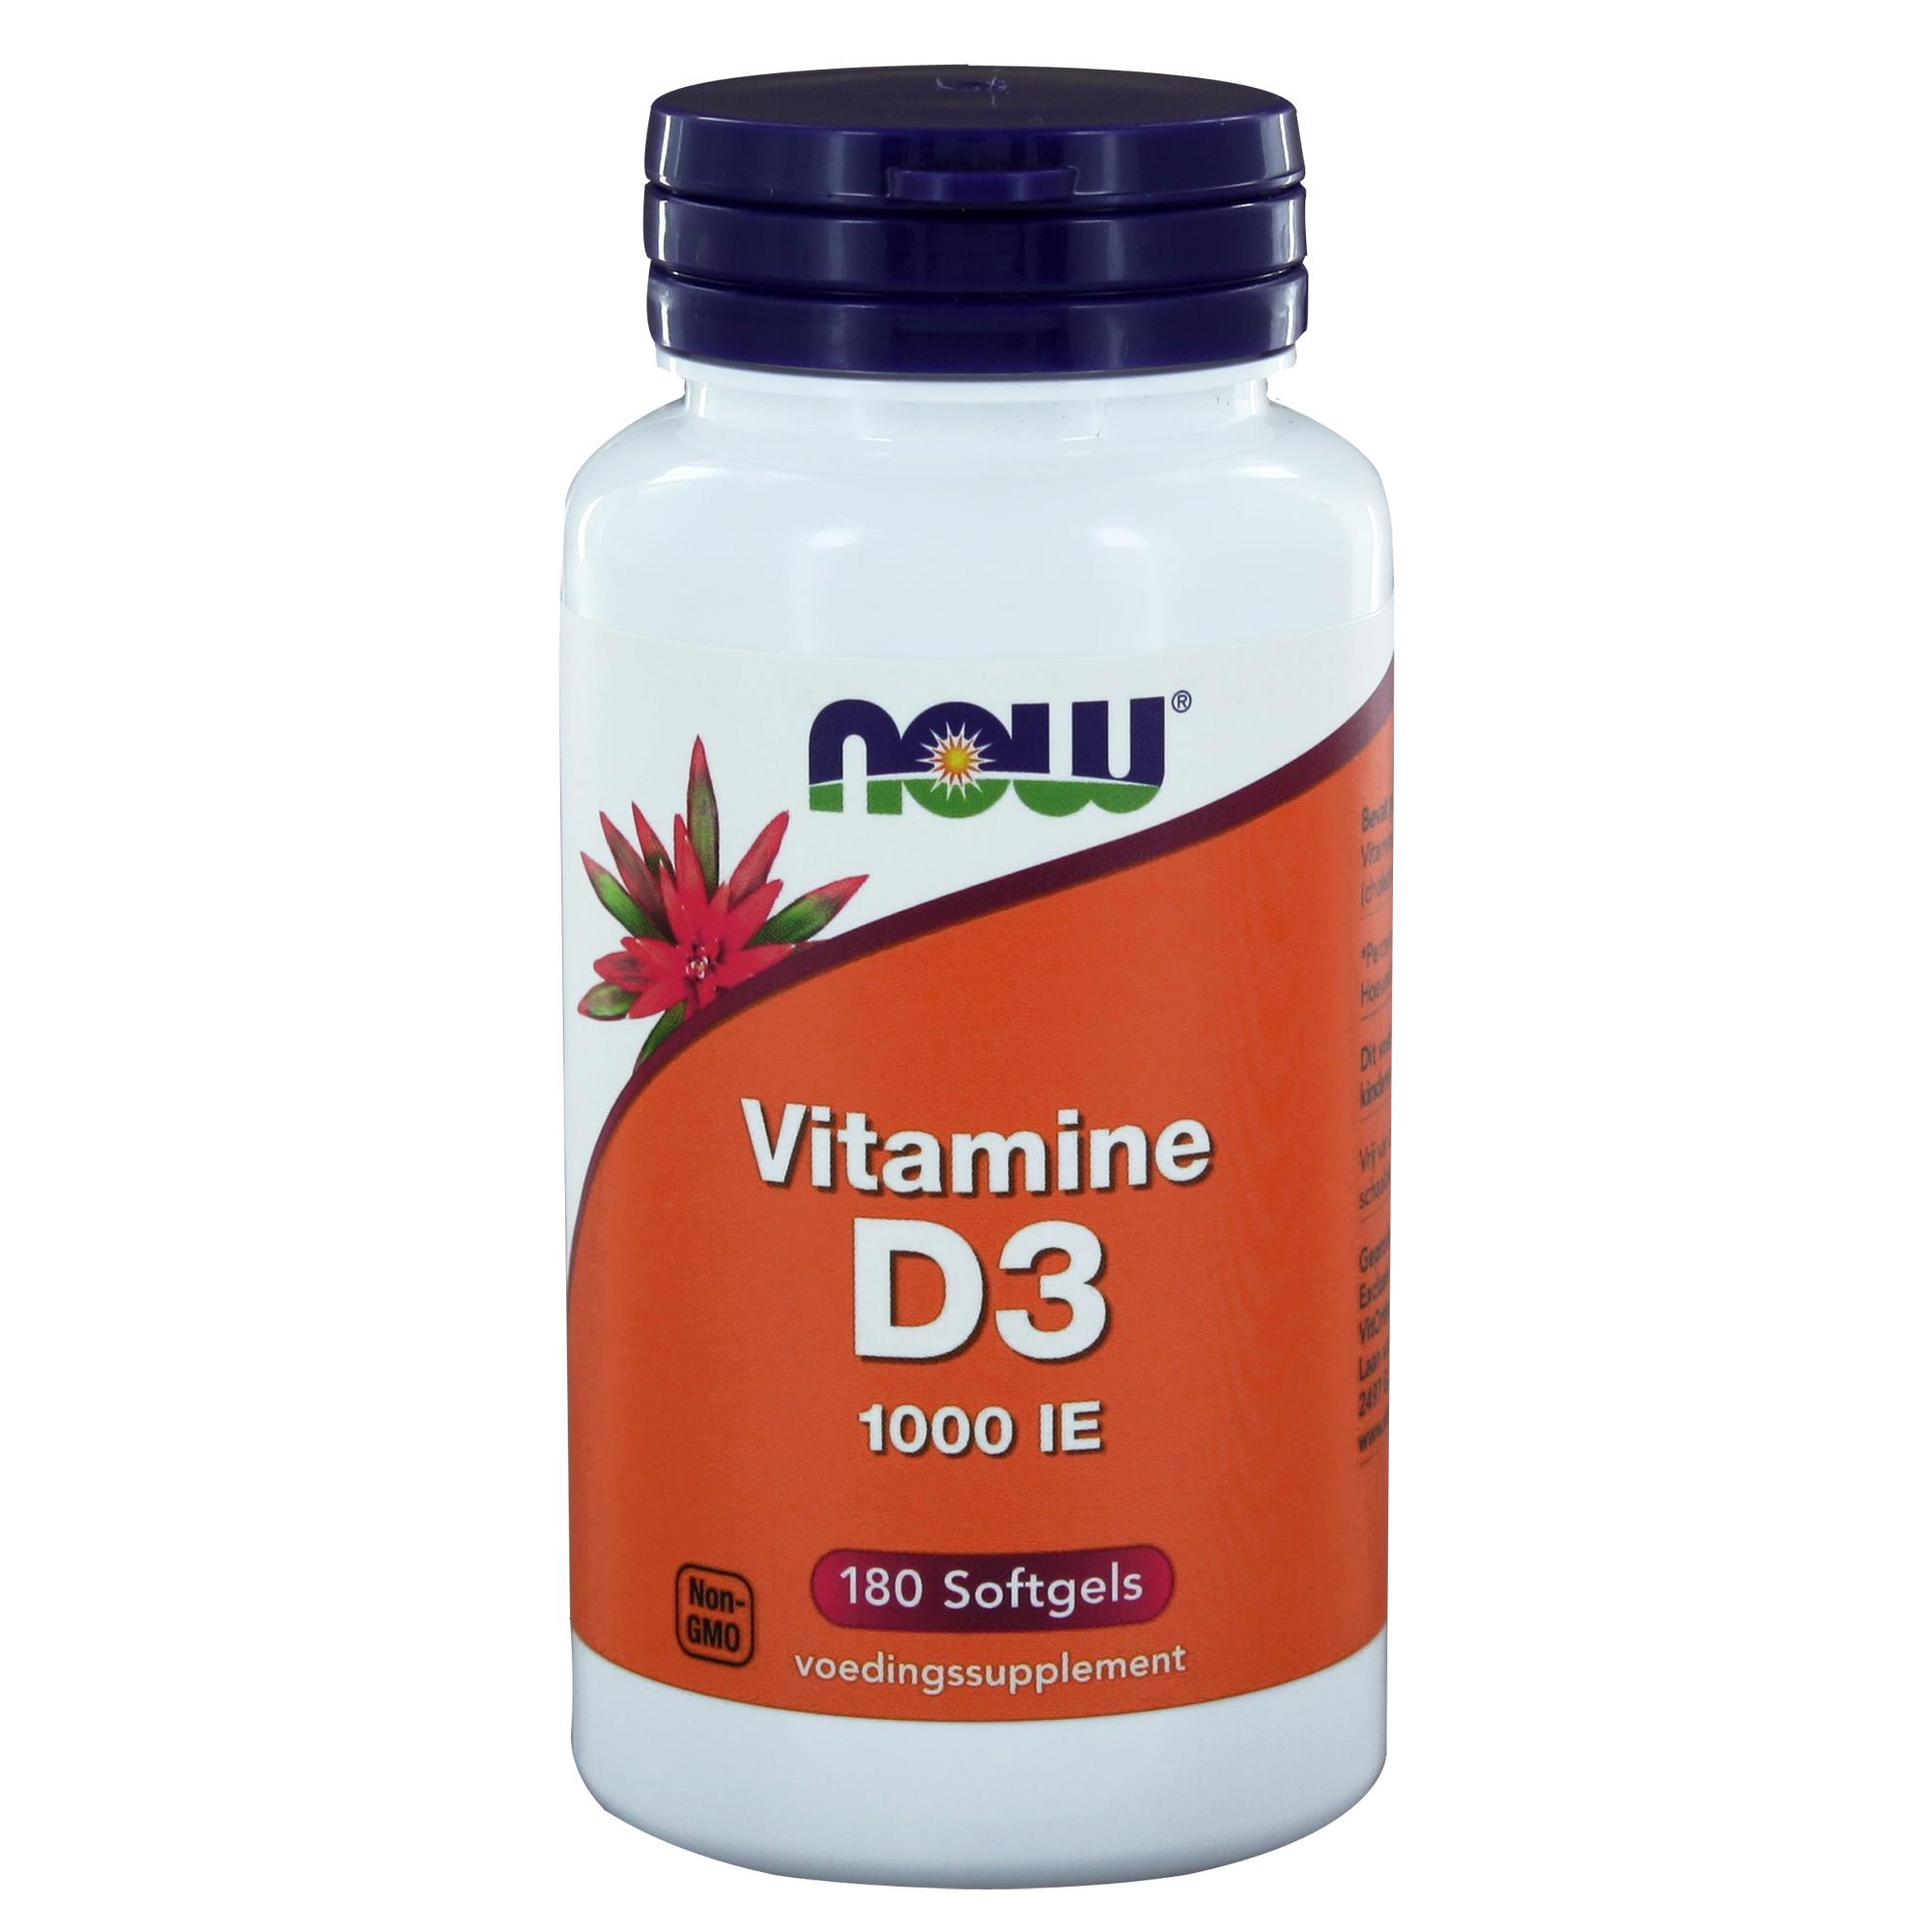 Vitamine D3 1000 iu - 180 softgels°°